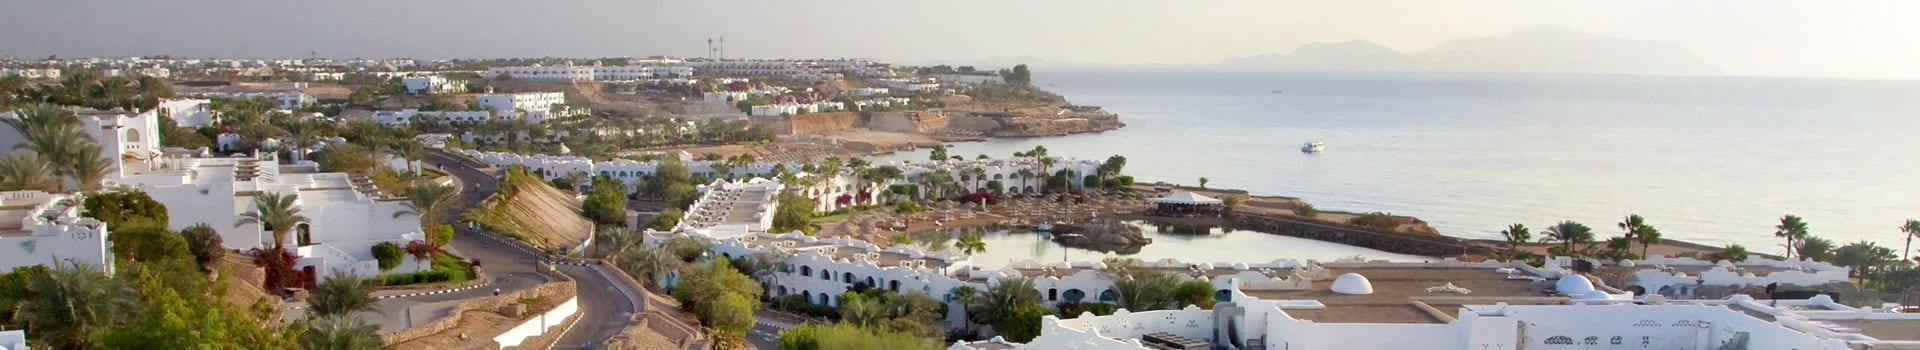 Porto - Sharm el sheikh